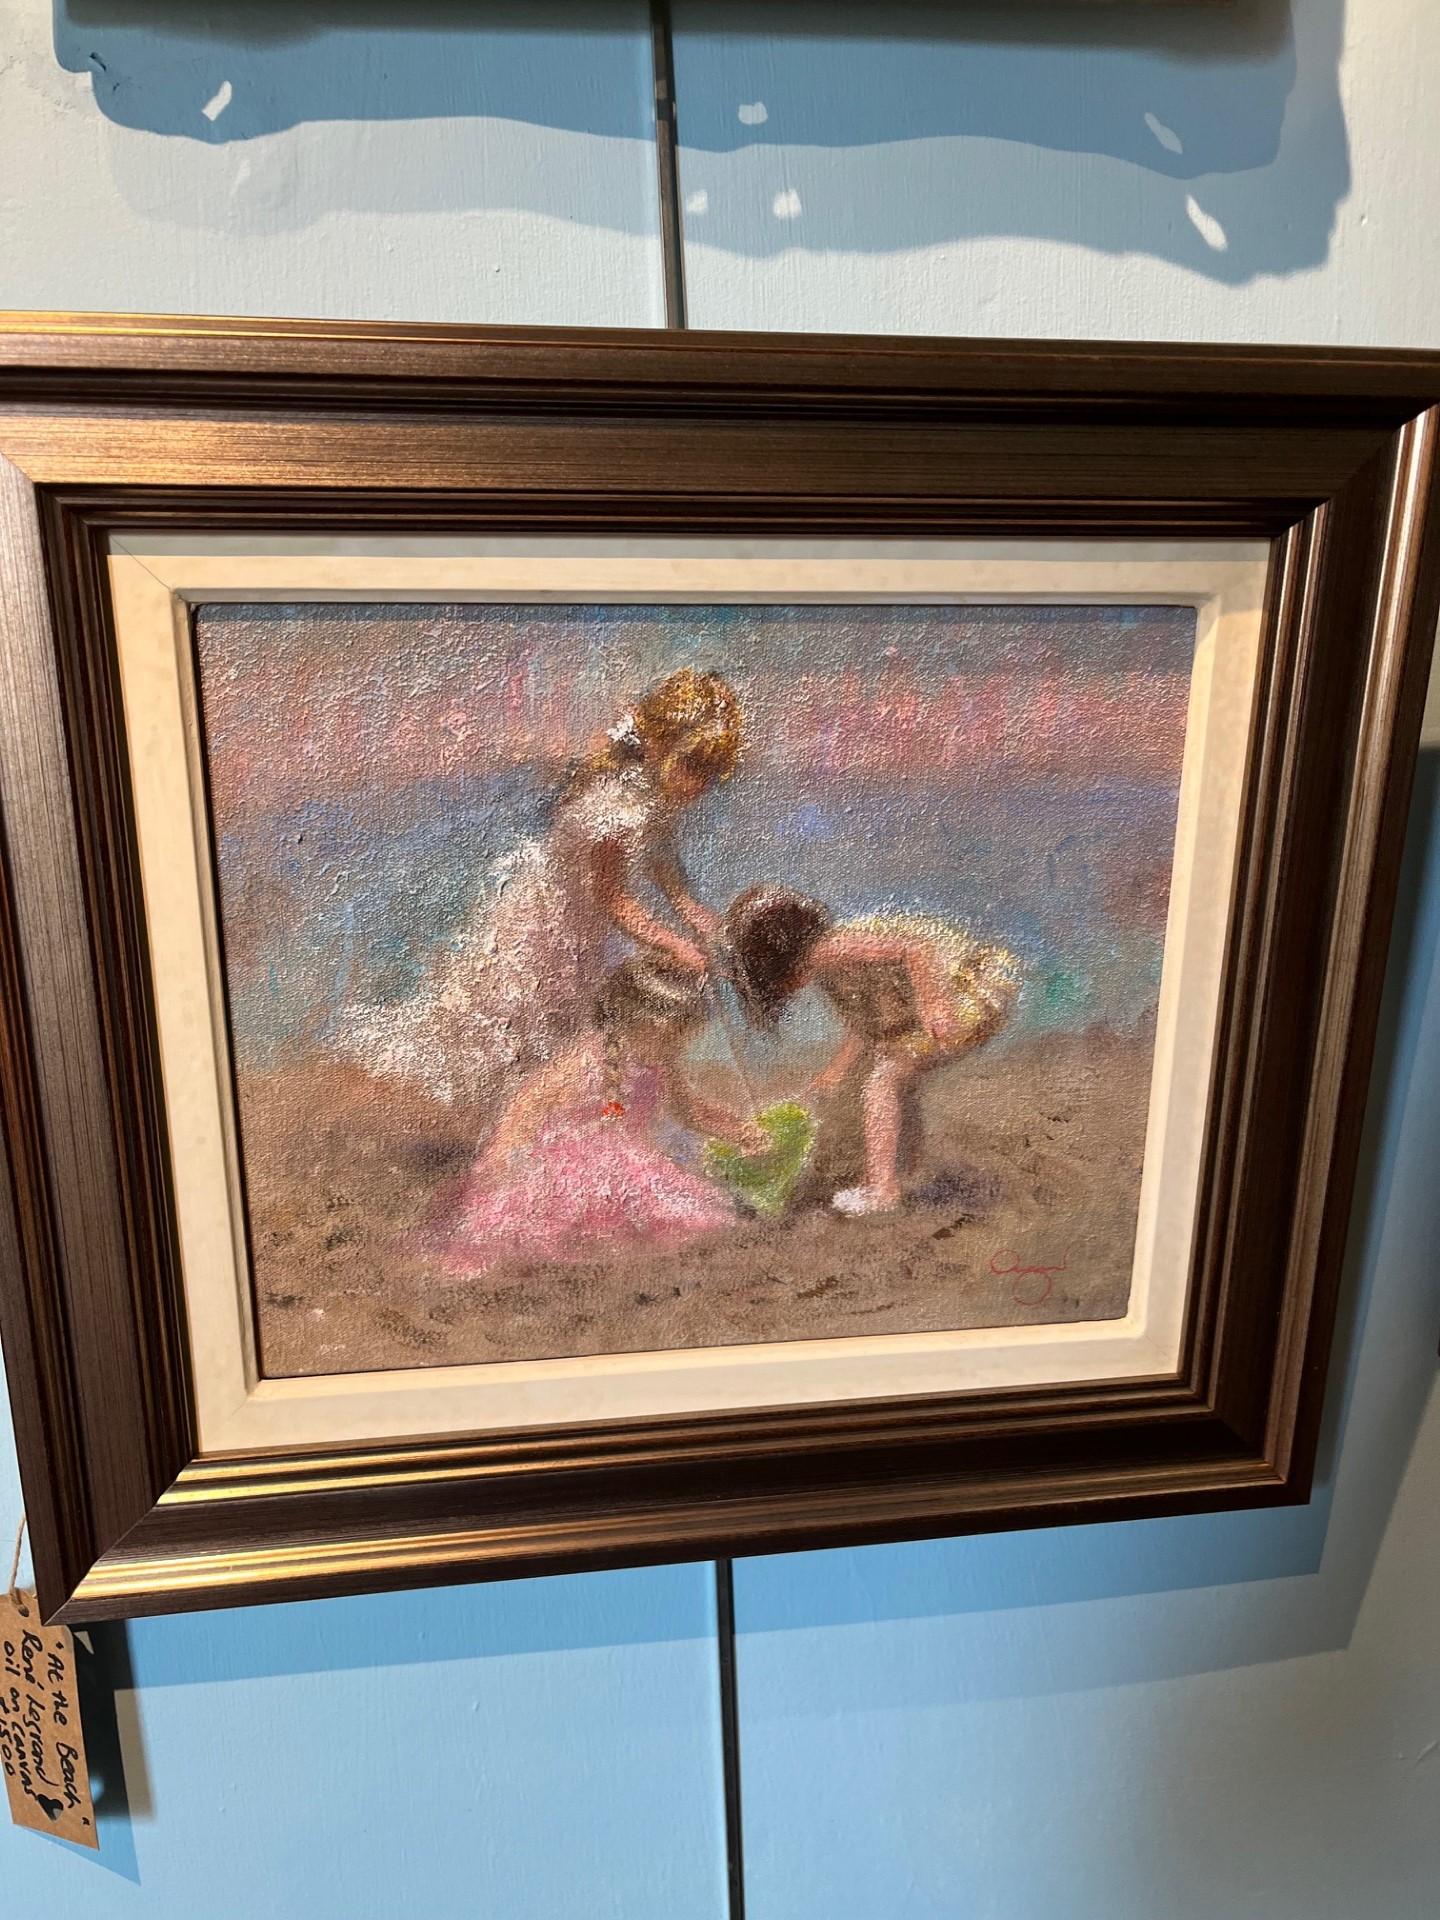 Trois enfants jouant des sables de plage, peinture à l'huile impressionniste moyenne - Painting de Rene Jerome Legrand